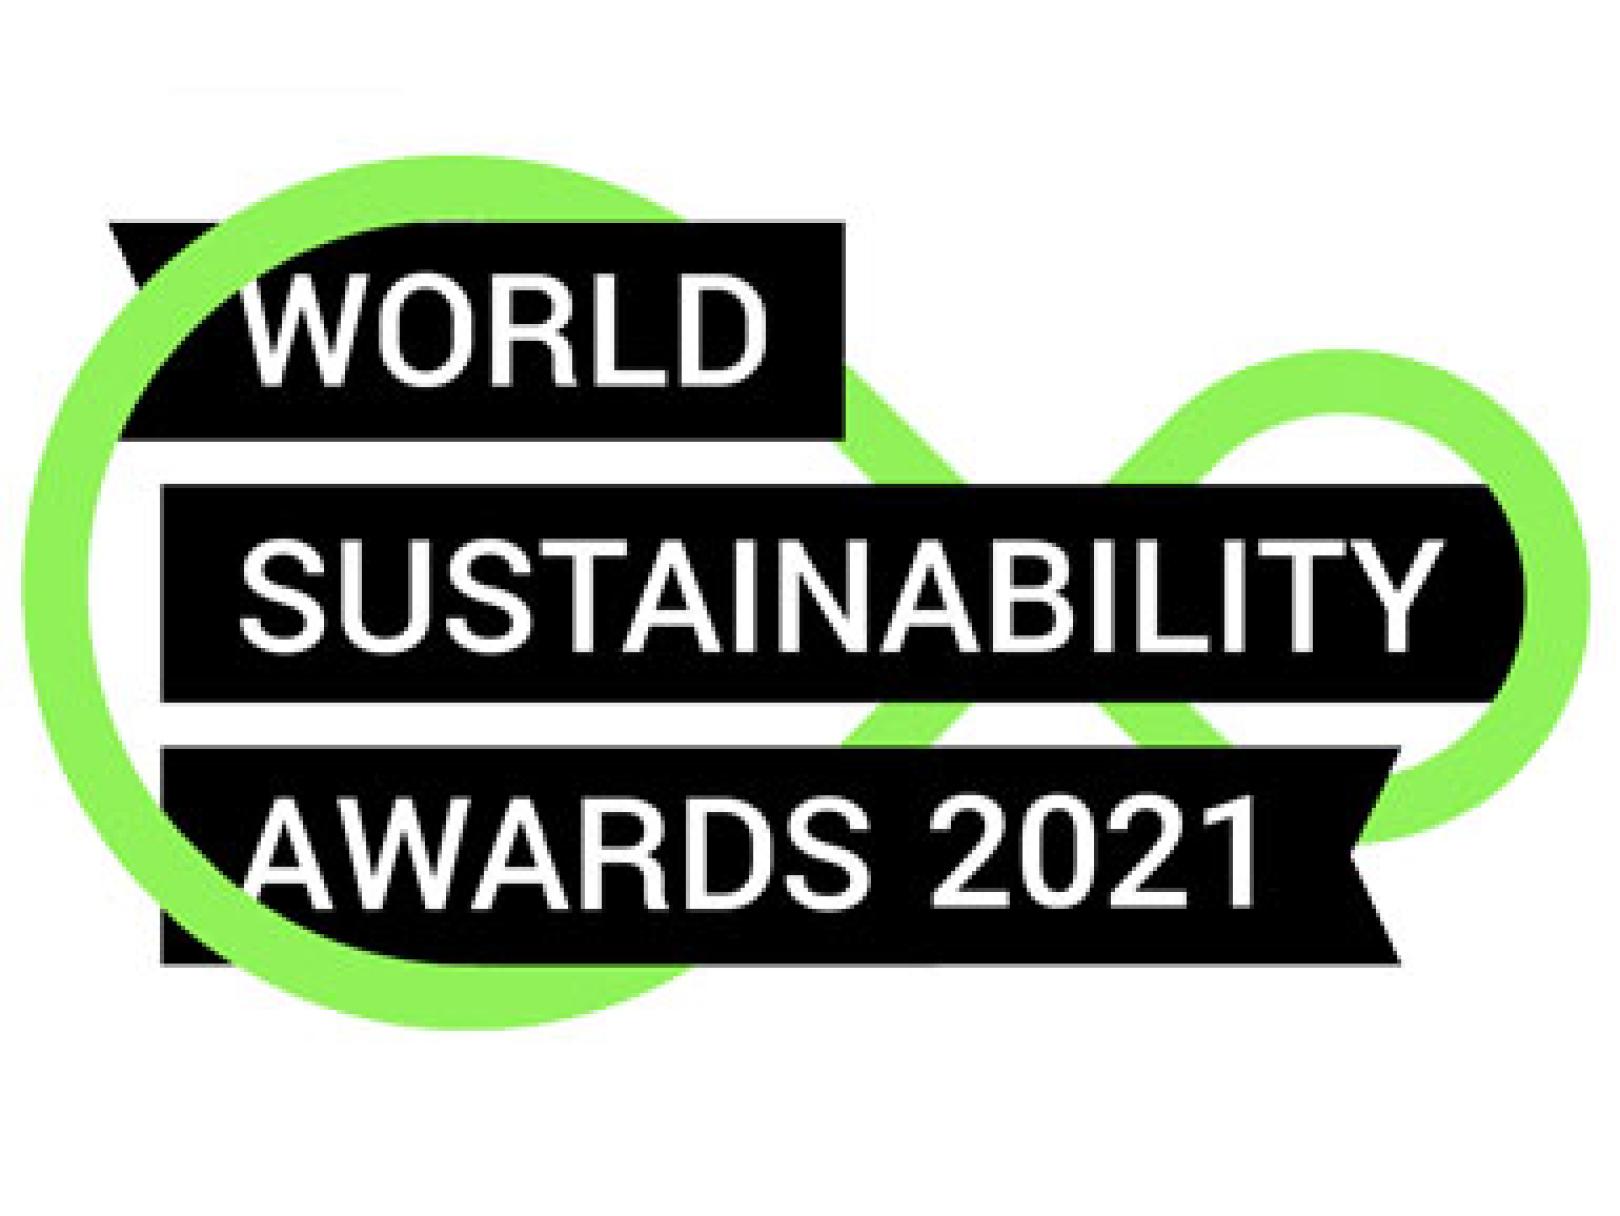  World Sustainability Awards 